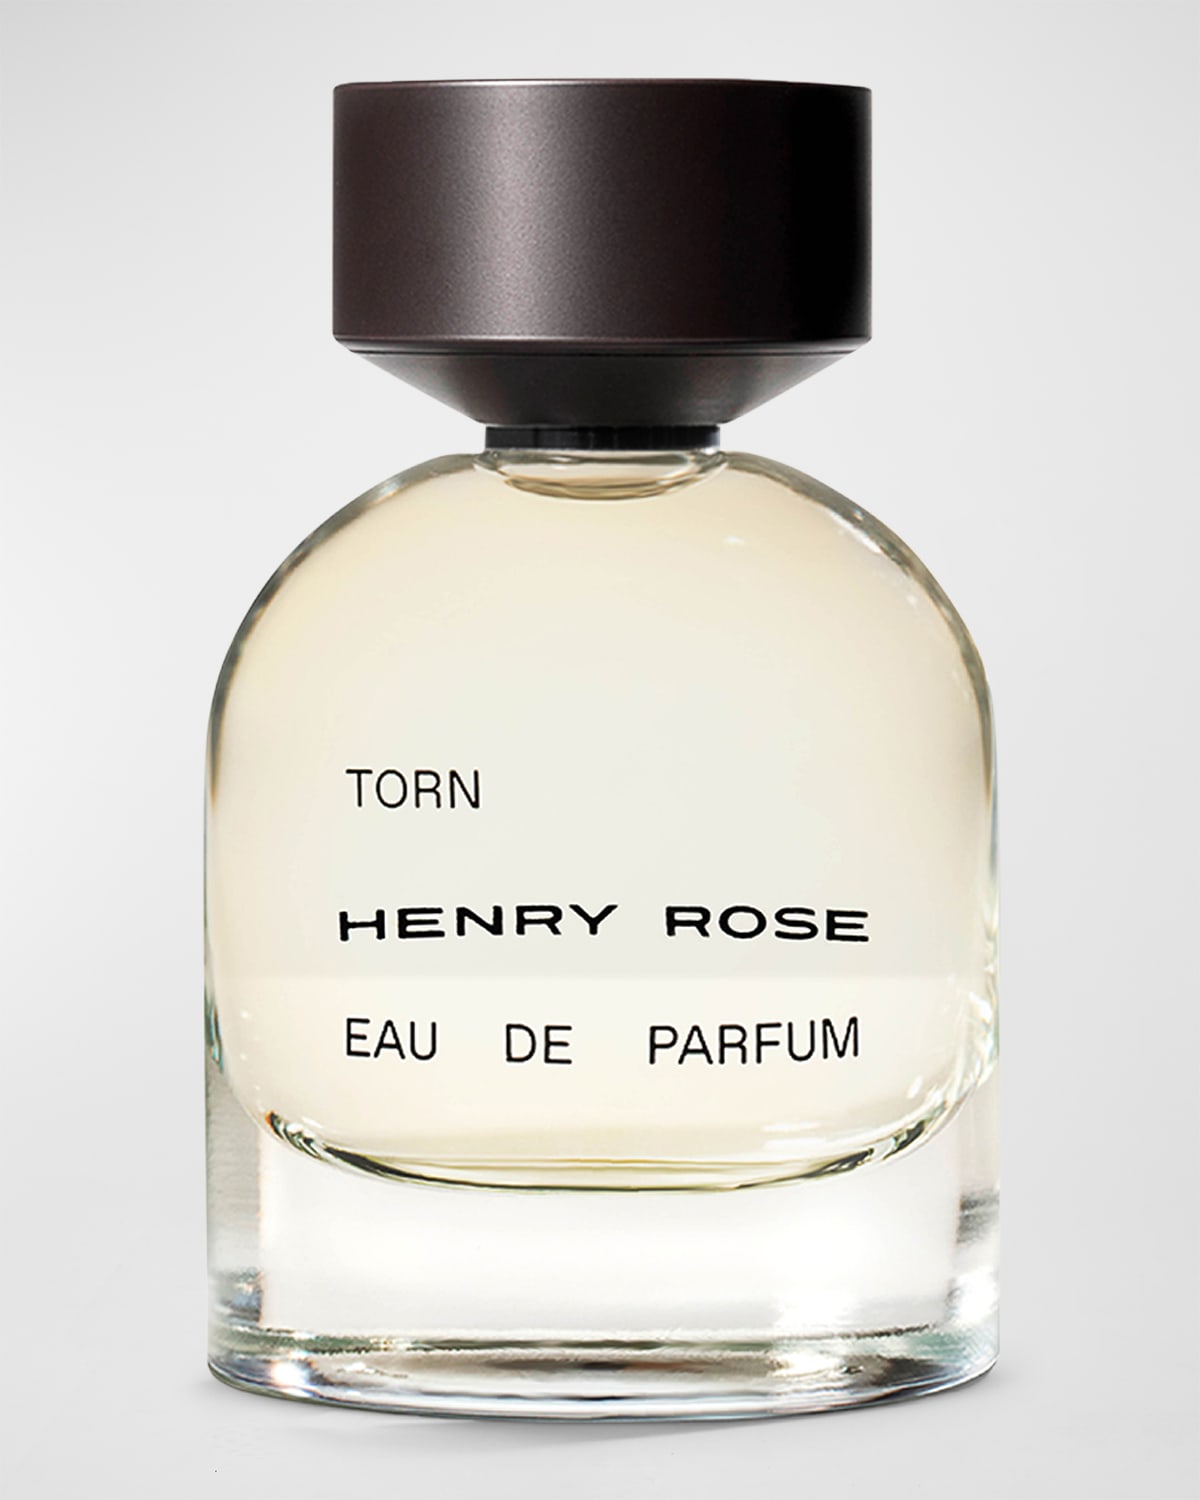 HENRY ROSE Torn Eau de Parfum, 1.7 oz.